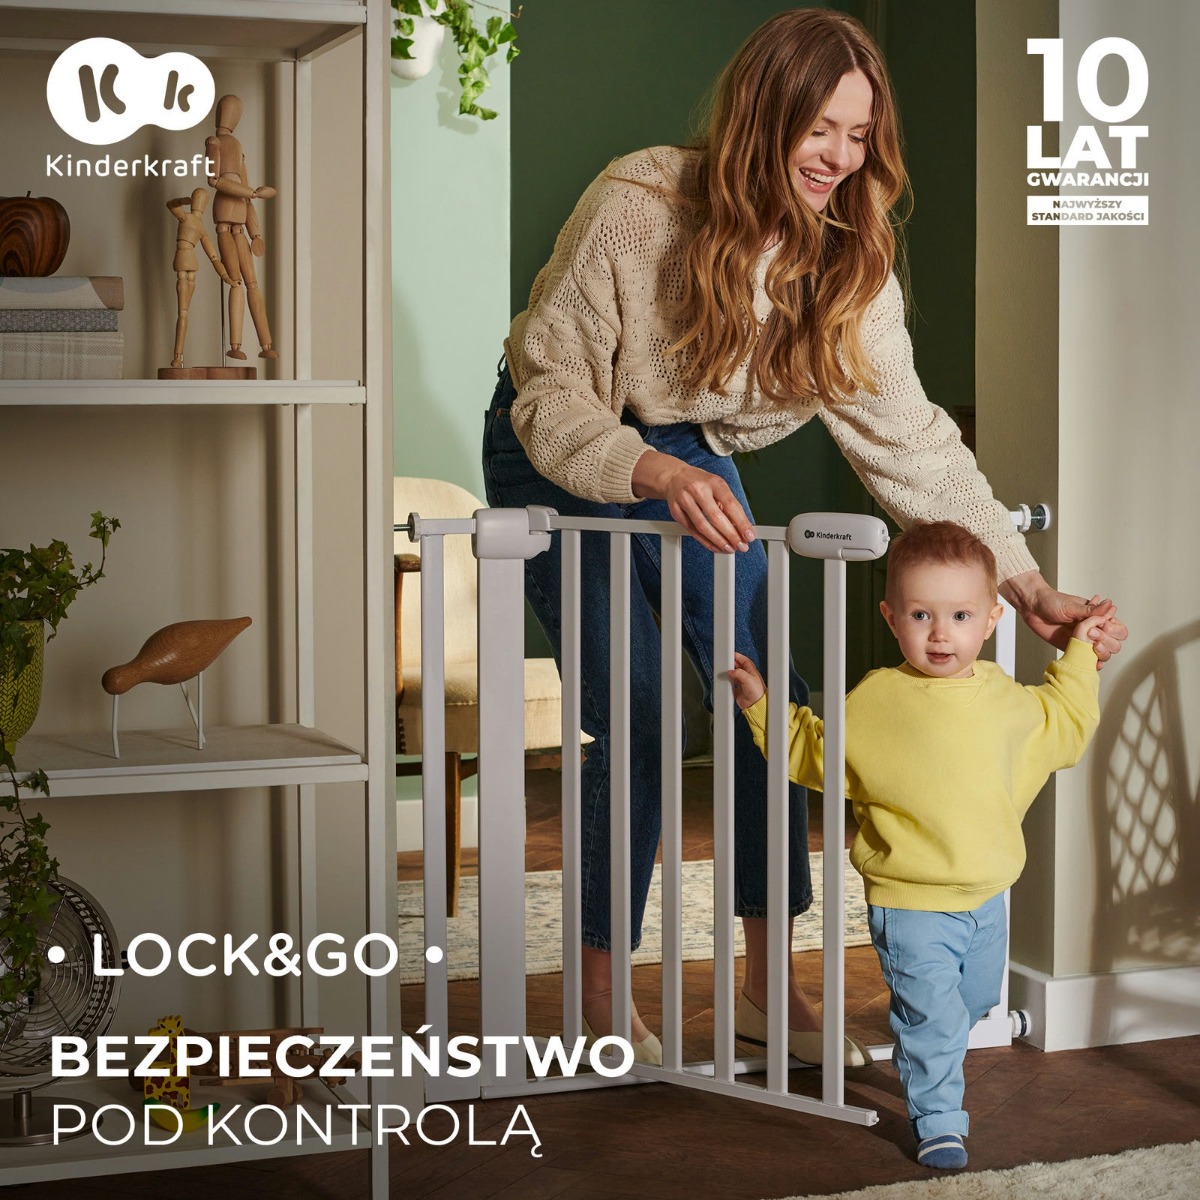 2PL-KK-lock-go-drewniany-bezpieczenstwo